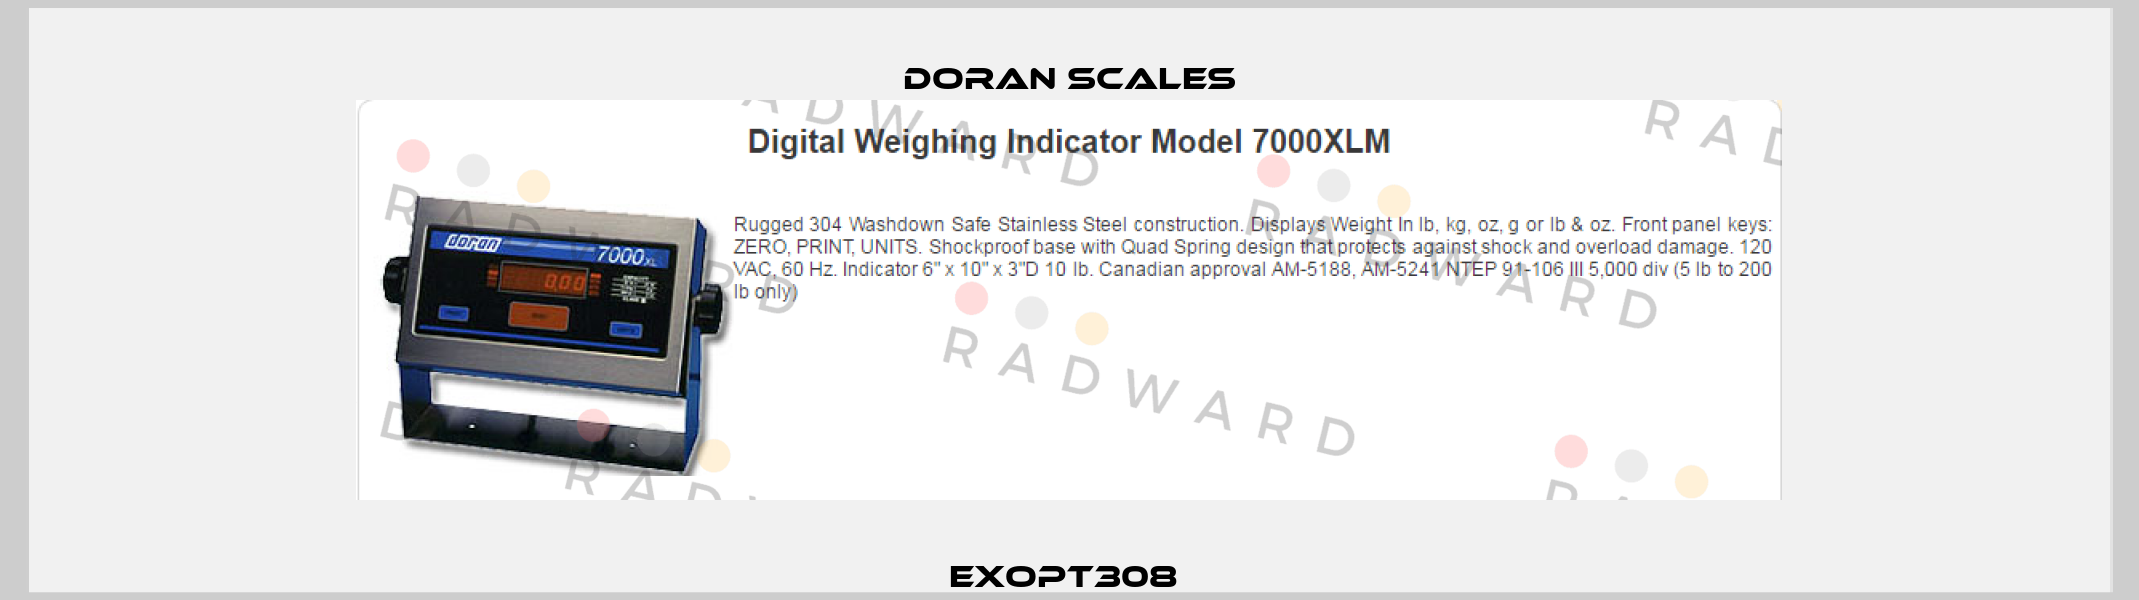 EXOPT308  DORAN SCALES